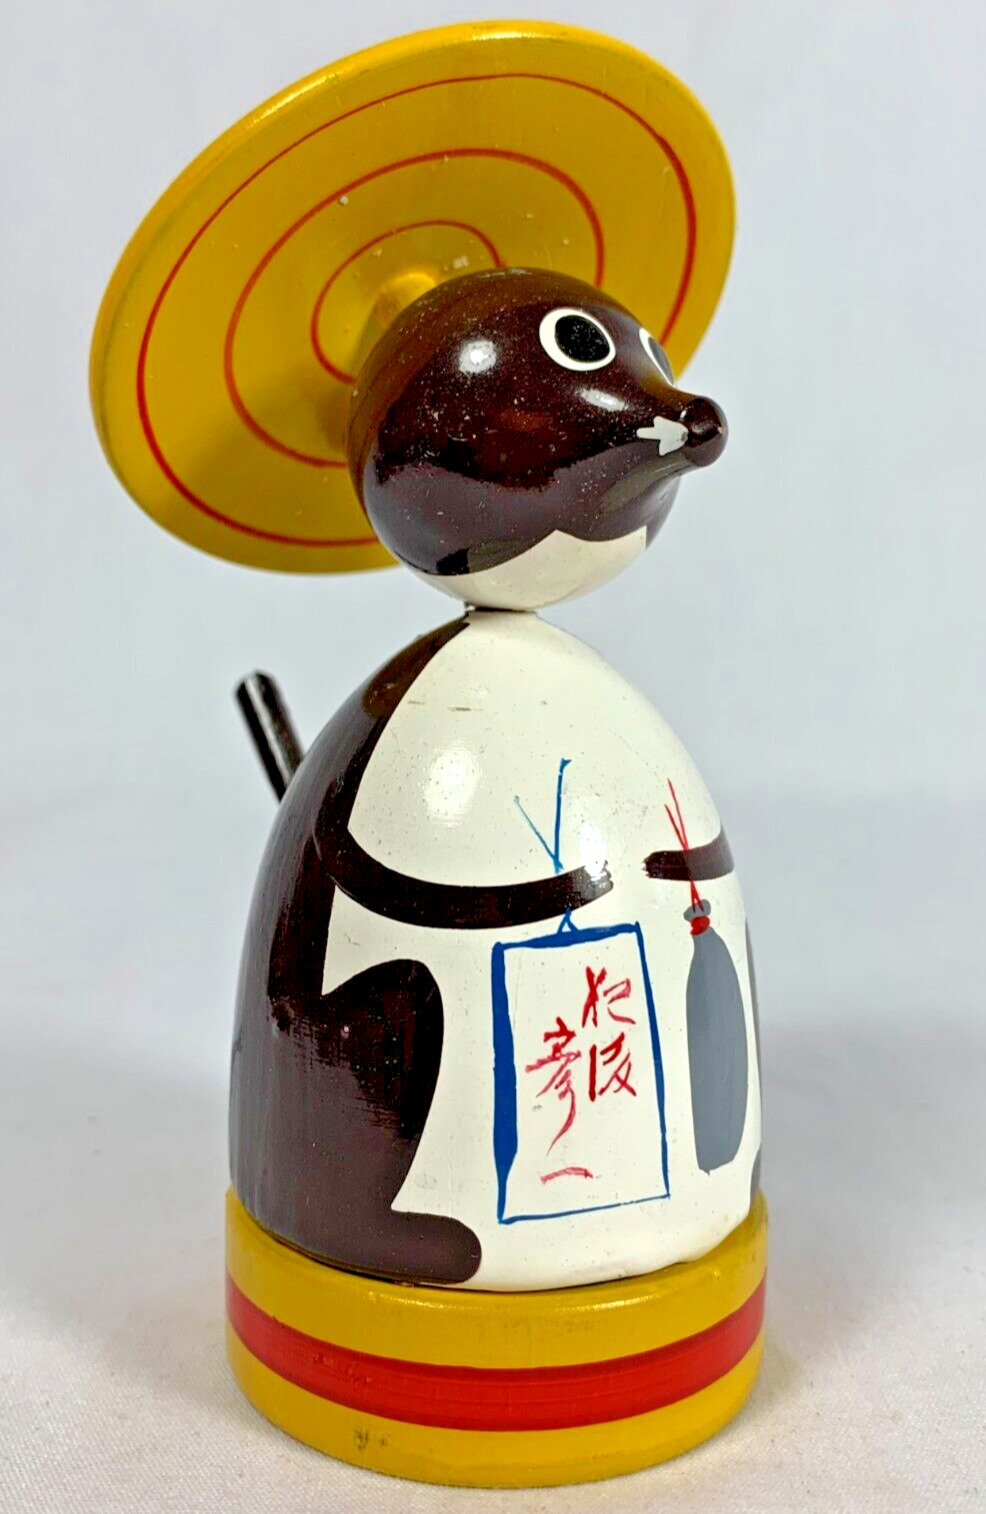 Tanuki Badger Japanese Folk Toy 4 Part Spinning Top Koma Transforms to Figurine